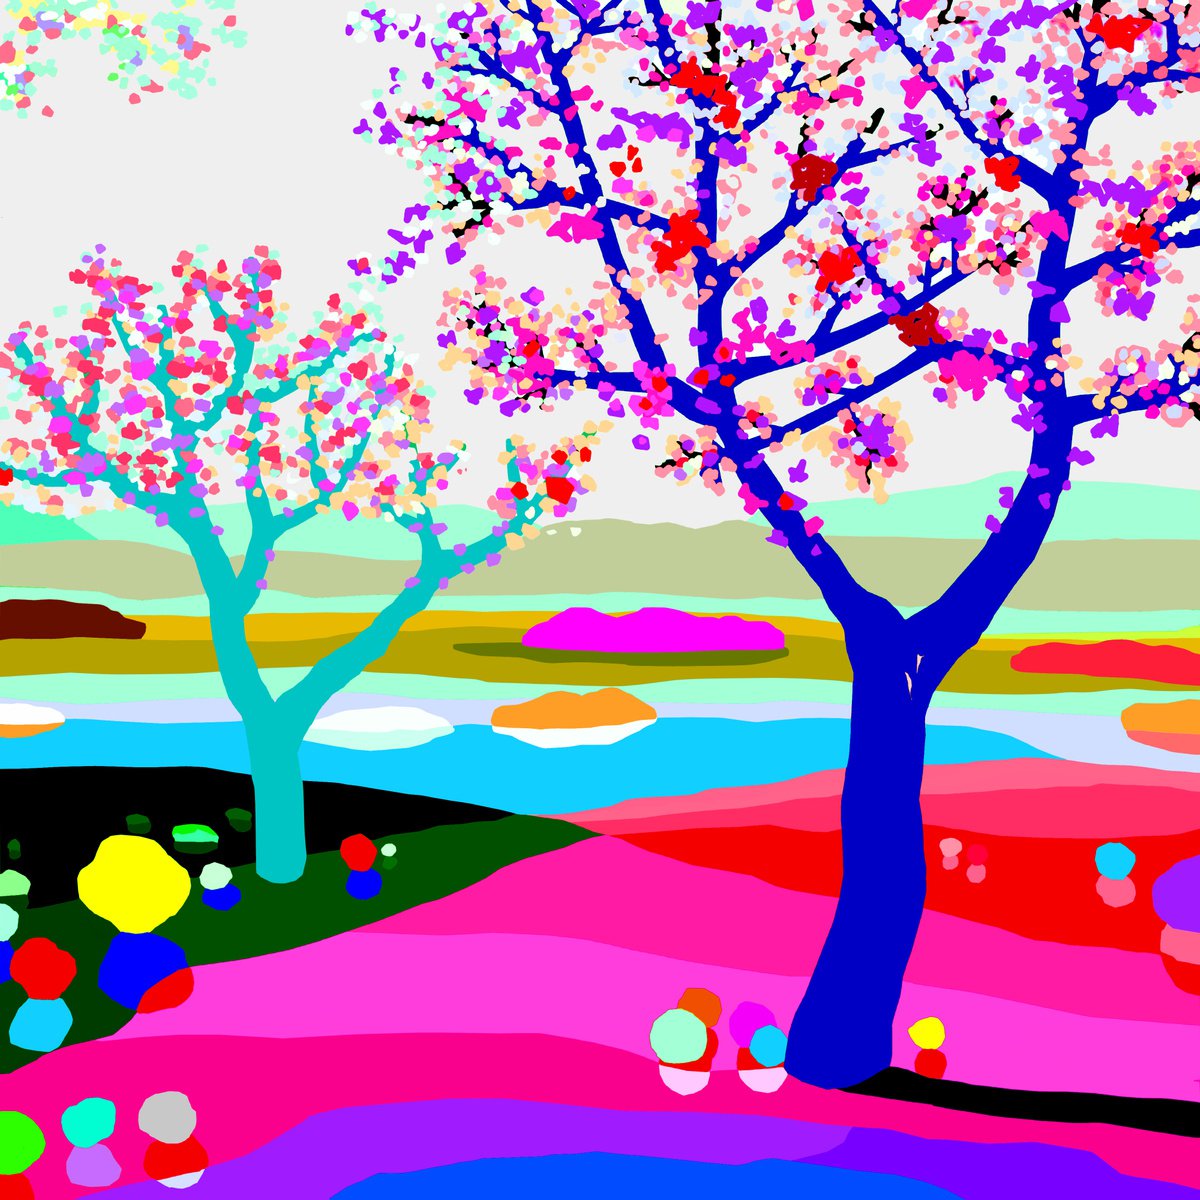 In bloom (En flor) (pop art, landscape) by Alejos - Pop Art landscapes